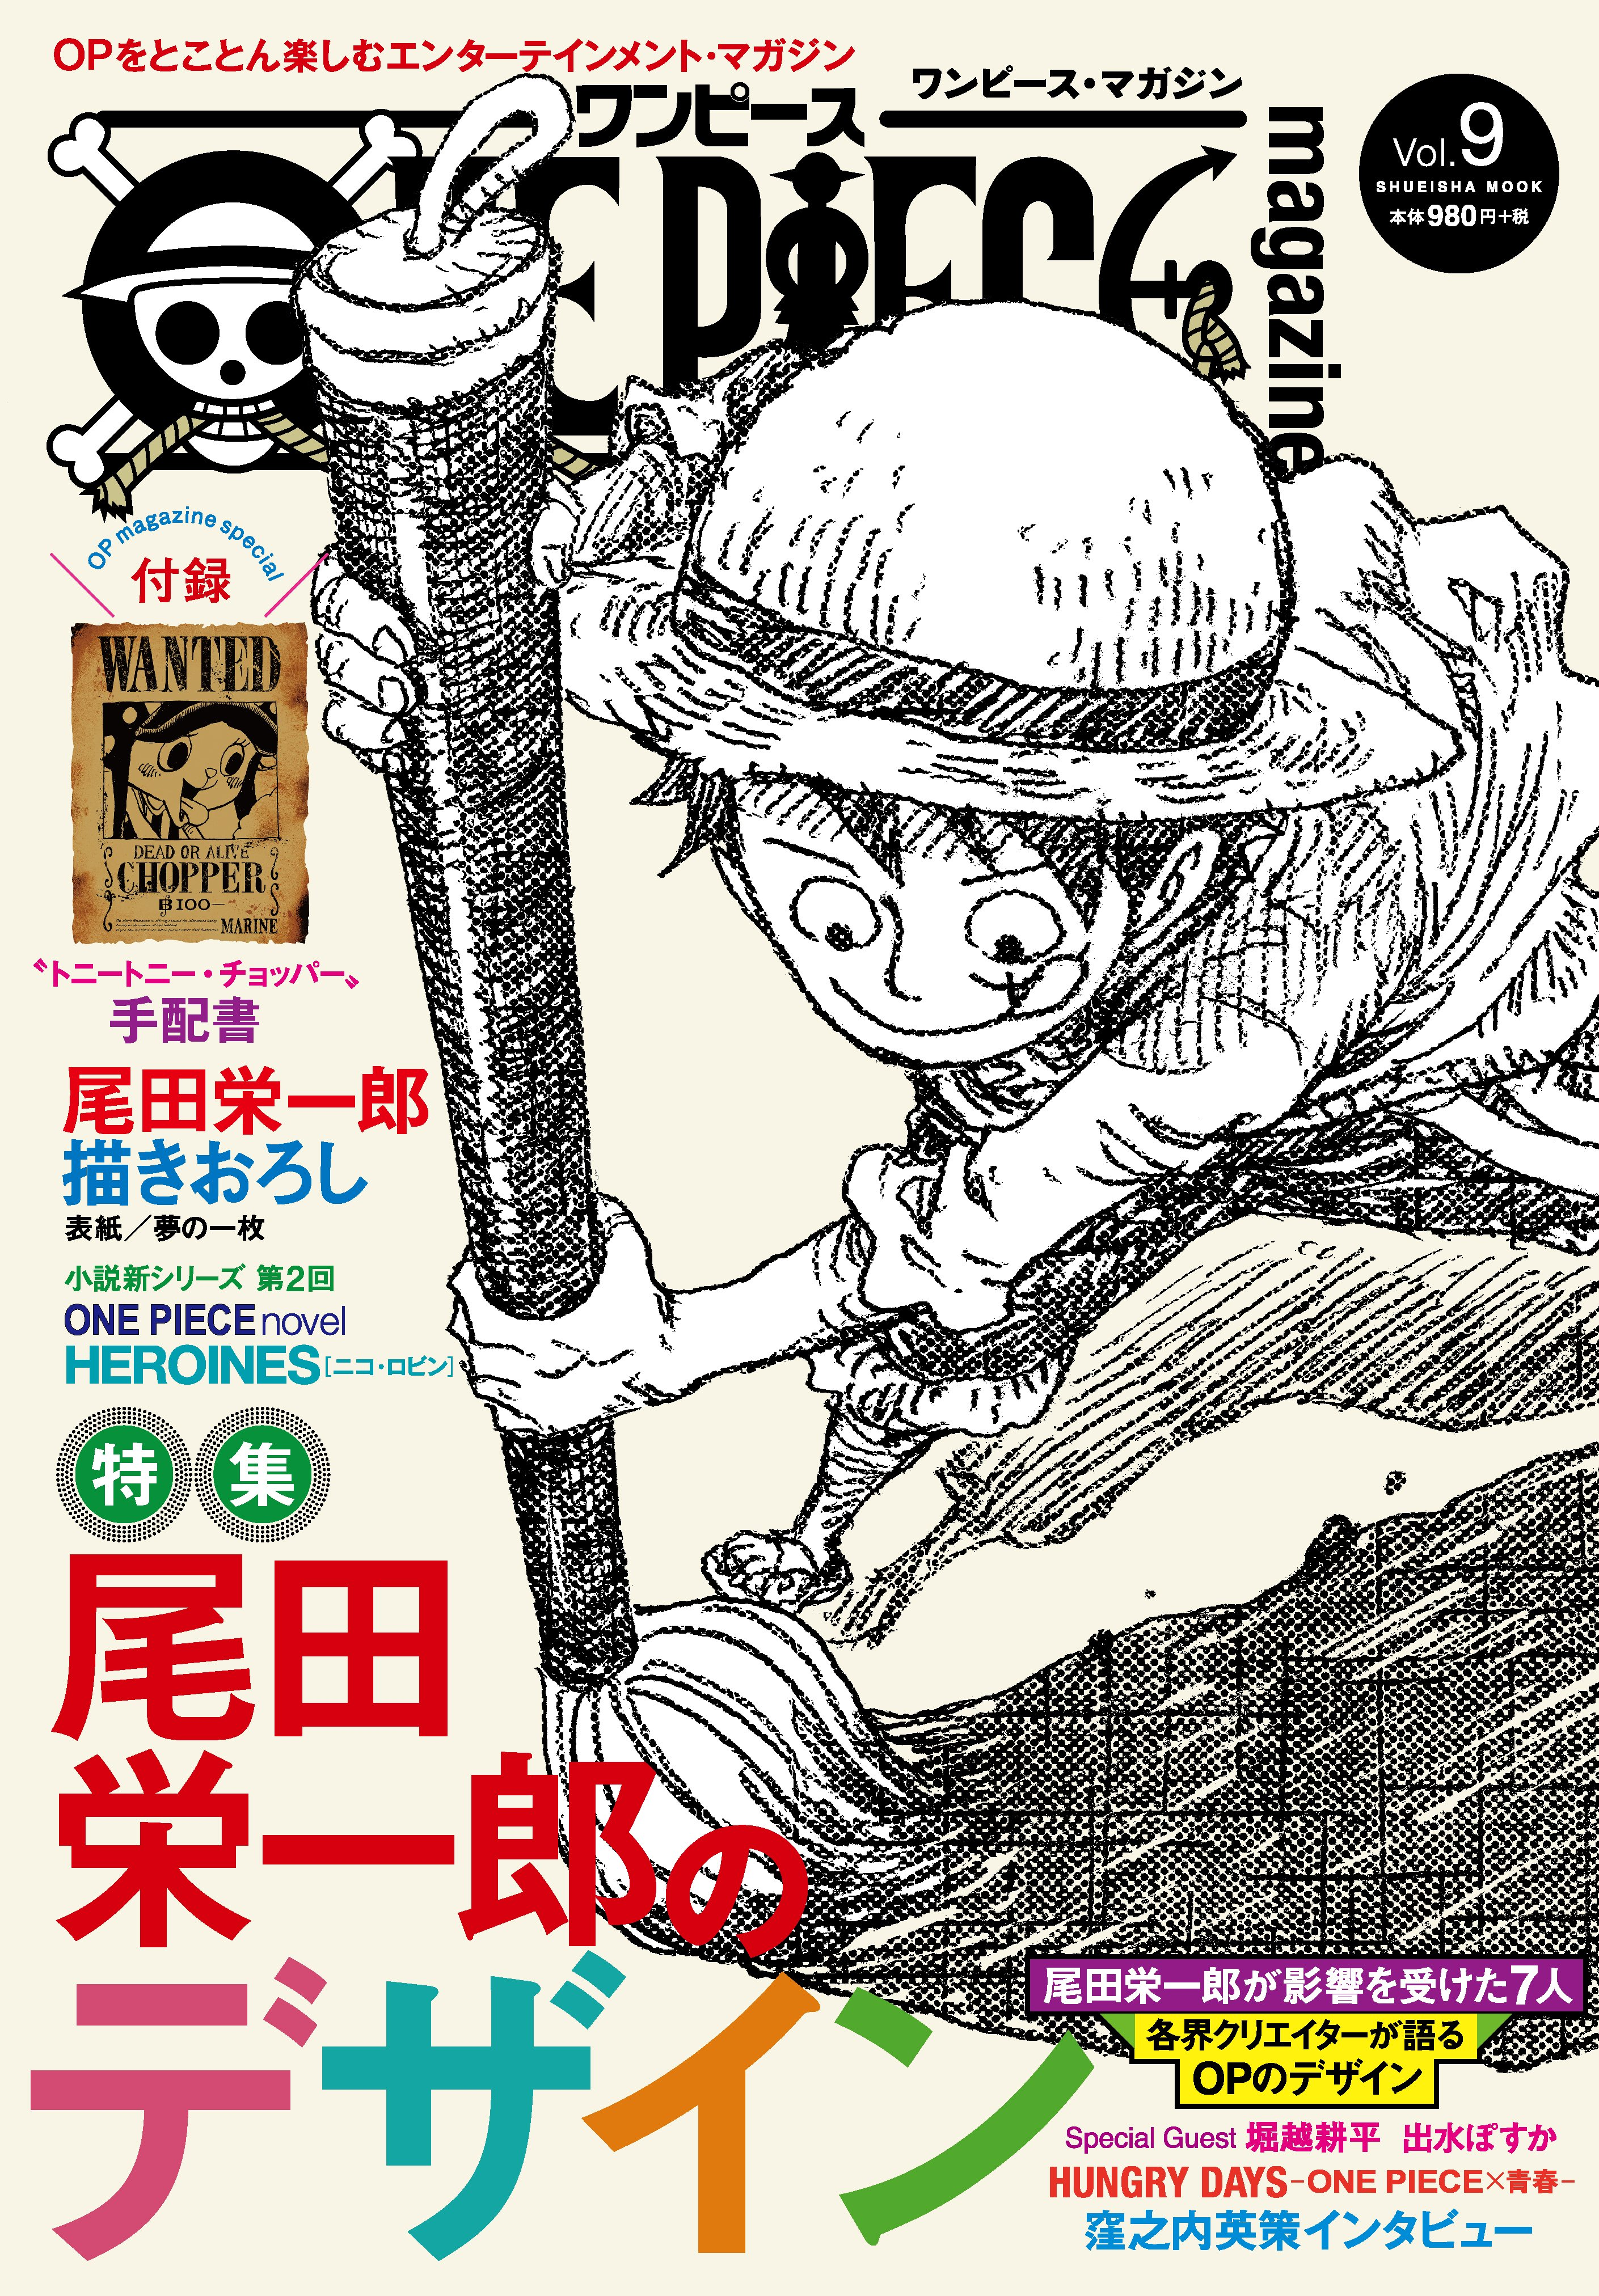 One Piece Magazine Vol 9 One Piece Wiki Fandom